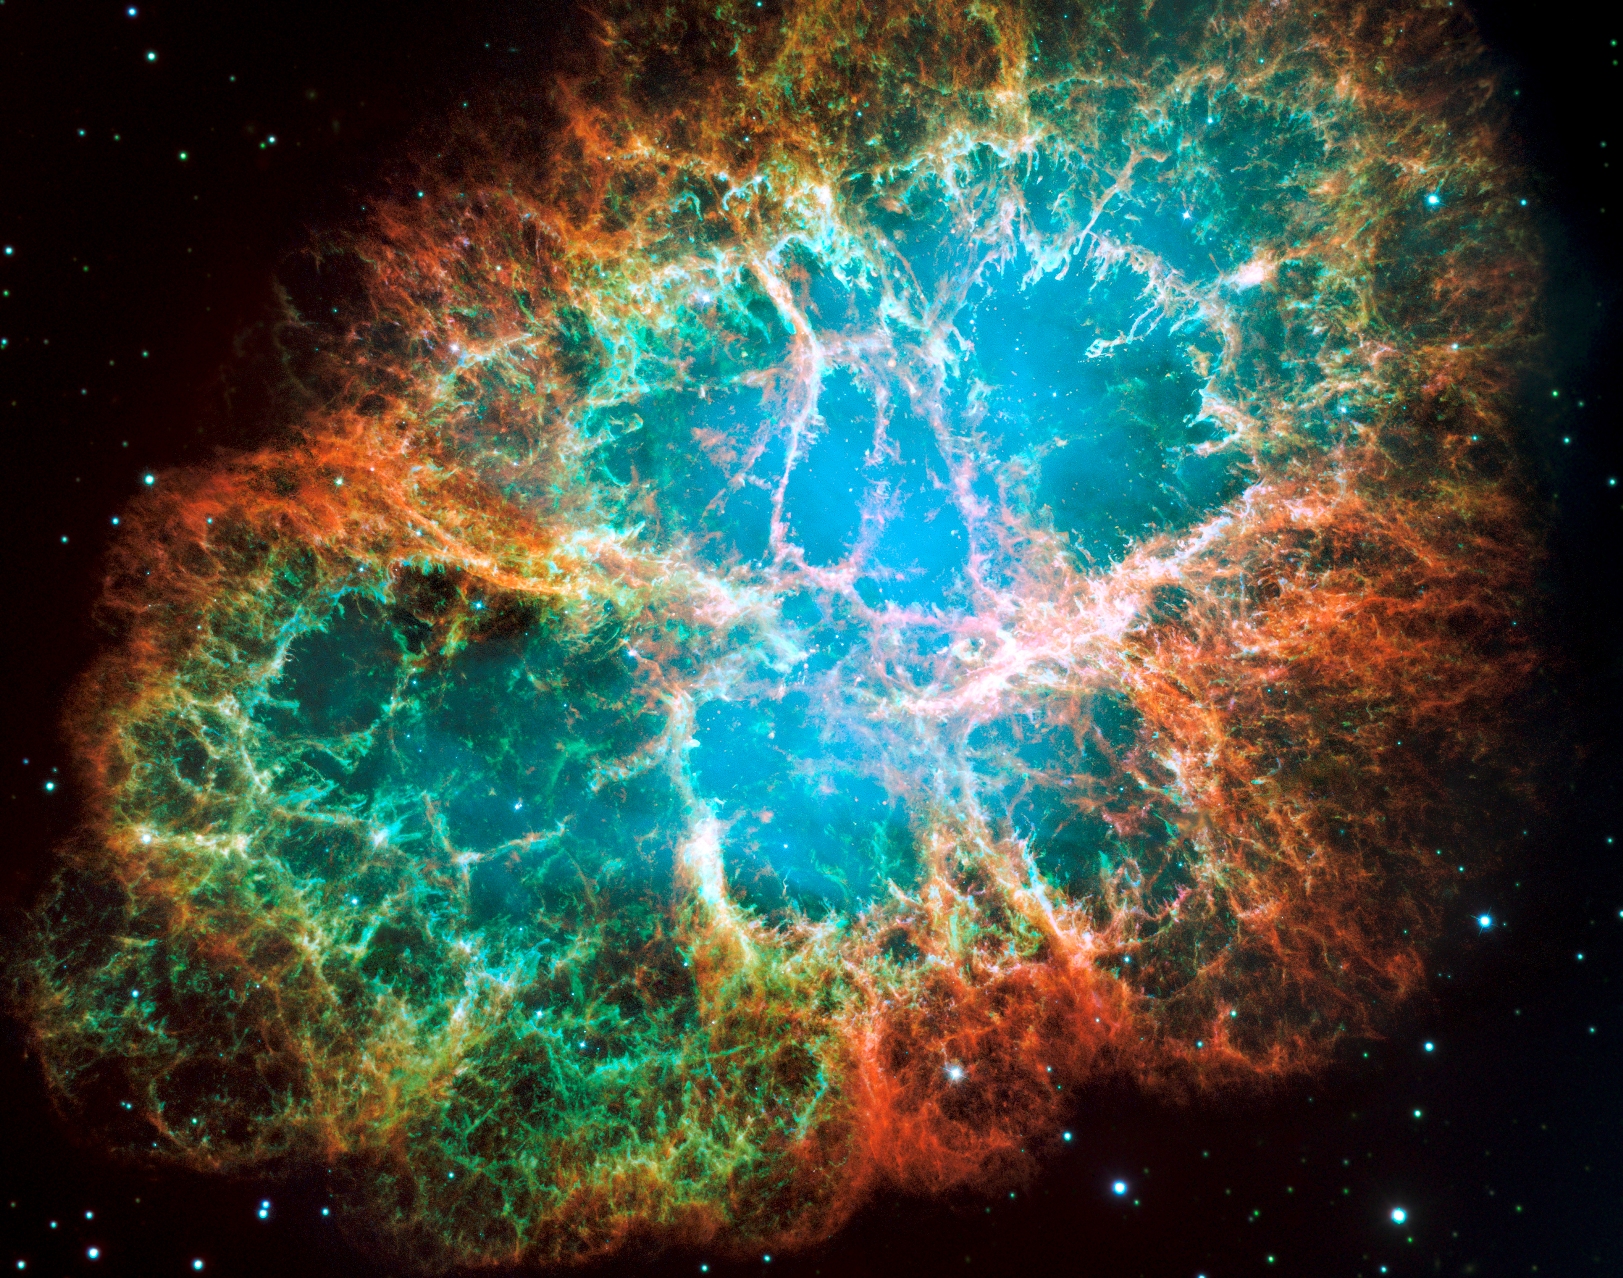 La nébuleuse du crabe, un nuage de débris en expansion de six années-lumière de diamètre provenant d'une explosion de supernova, héberge une étoile à neutrons tournant sur elle-même 30 fois par seconde&nbsp; et qui fait partie des pulsars les plus brillants du ciel aux longueurs d'onde des rayons X et radio. Cette composition d'images du télescope spatial Hubble révèle différents gaz expulsés lors de l'explosion: le bleu révèle l'oxygène neutre, le vert montre le soufre mono-ionisé et le rouge indique l'oxygène doublement ionisé.&nbsp;© Nasa, ESA, J. Hester et A. Loll (Arizona State University)